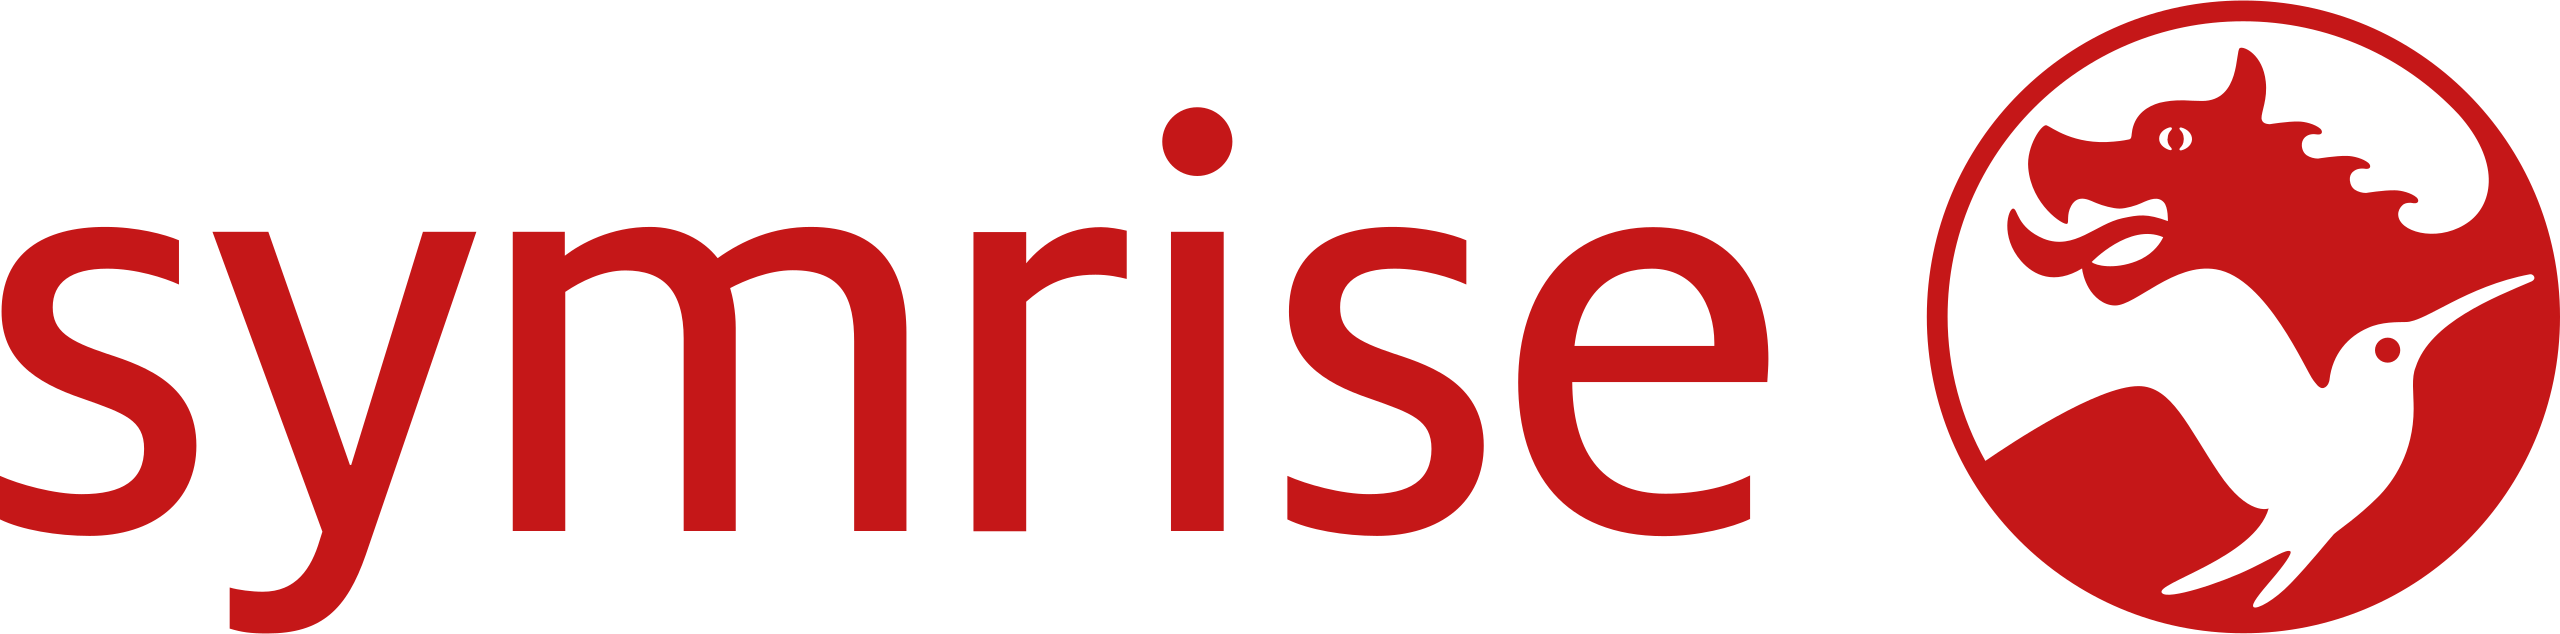 Symrise Logo 2016.svg